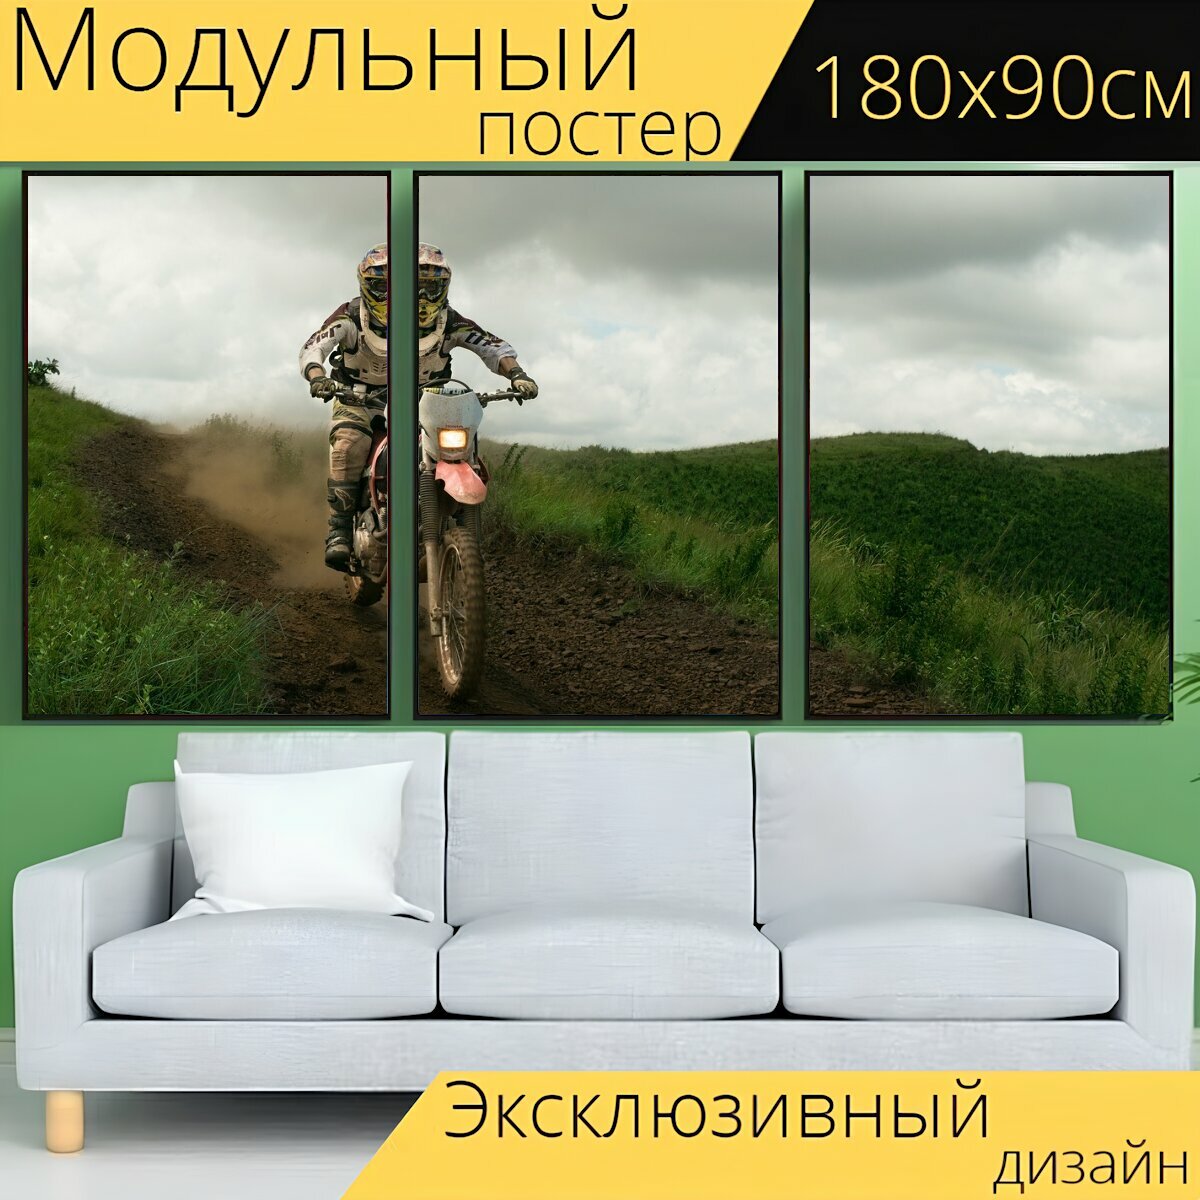 Модульный постер "Велосипед грязи, спортивный мотоцикл, велосипед" 180 x 90 см. для интерьера